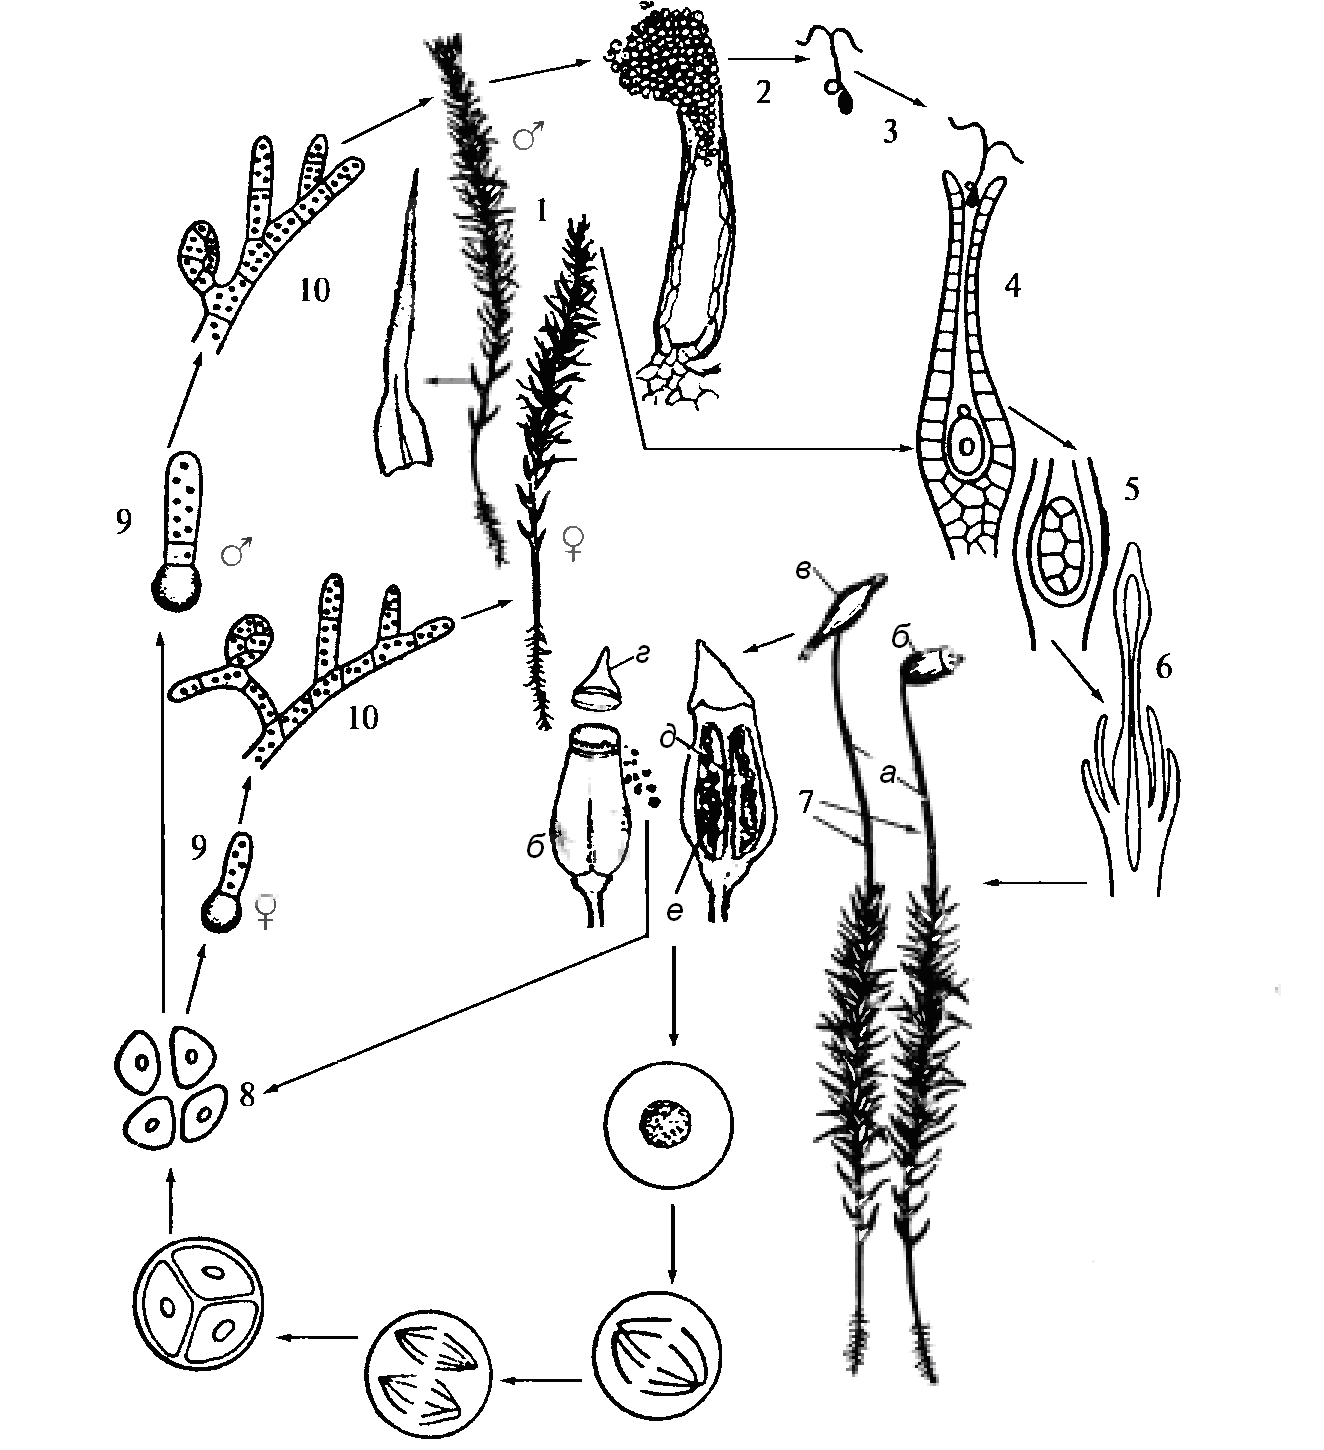 Этапы жизненного цикла кукушкина льна. Жизненный цикл листостебельных мхов Кукушкин лен. Жизненный цикл мха Кукушкин лен схема. Жизненный цикл мха Кукушкина льна. Жизненный цикл развития мха Кукушкин лен.